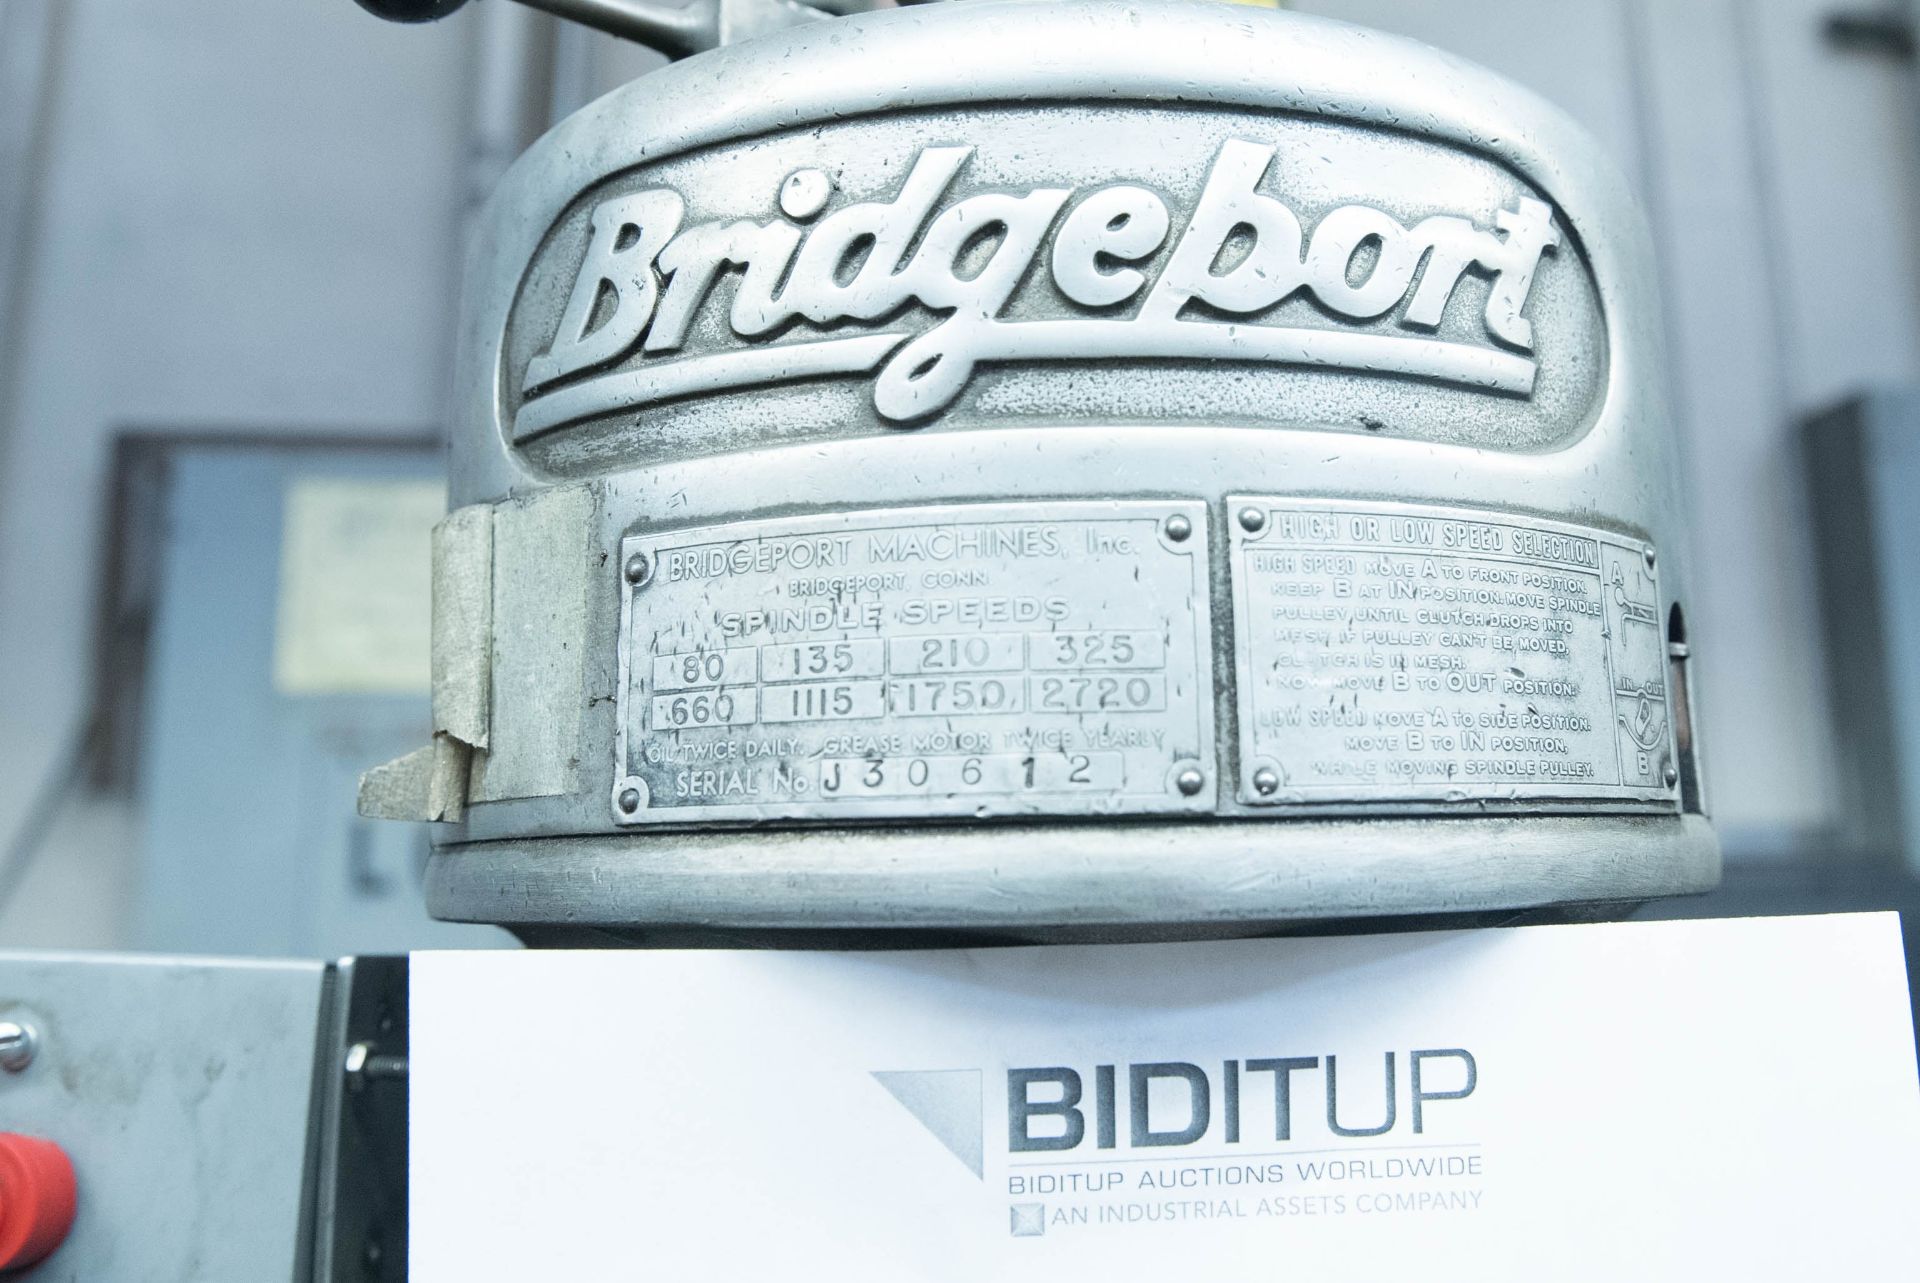 Bridgeport Variable Speed Vertical Drill, S/N J30612 - Image 2 of 6